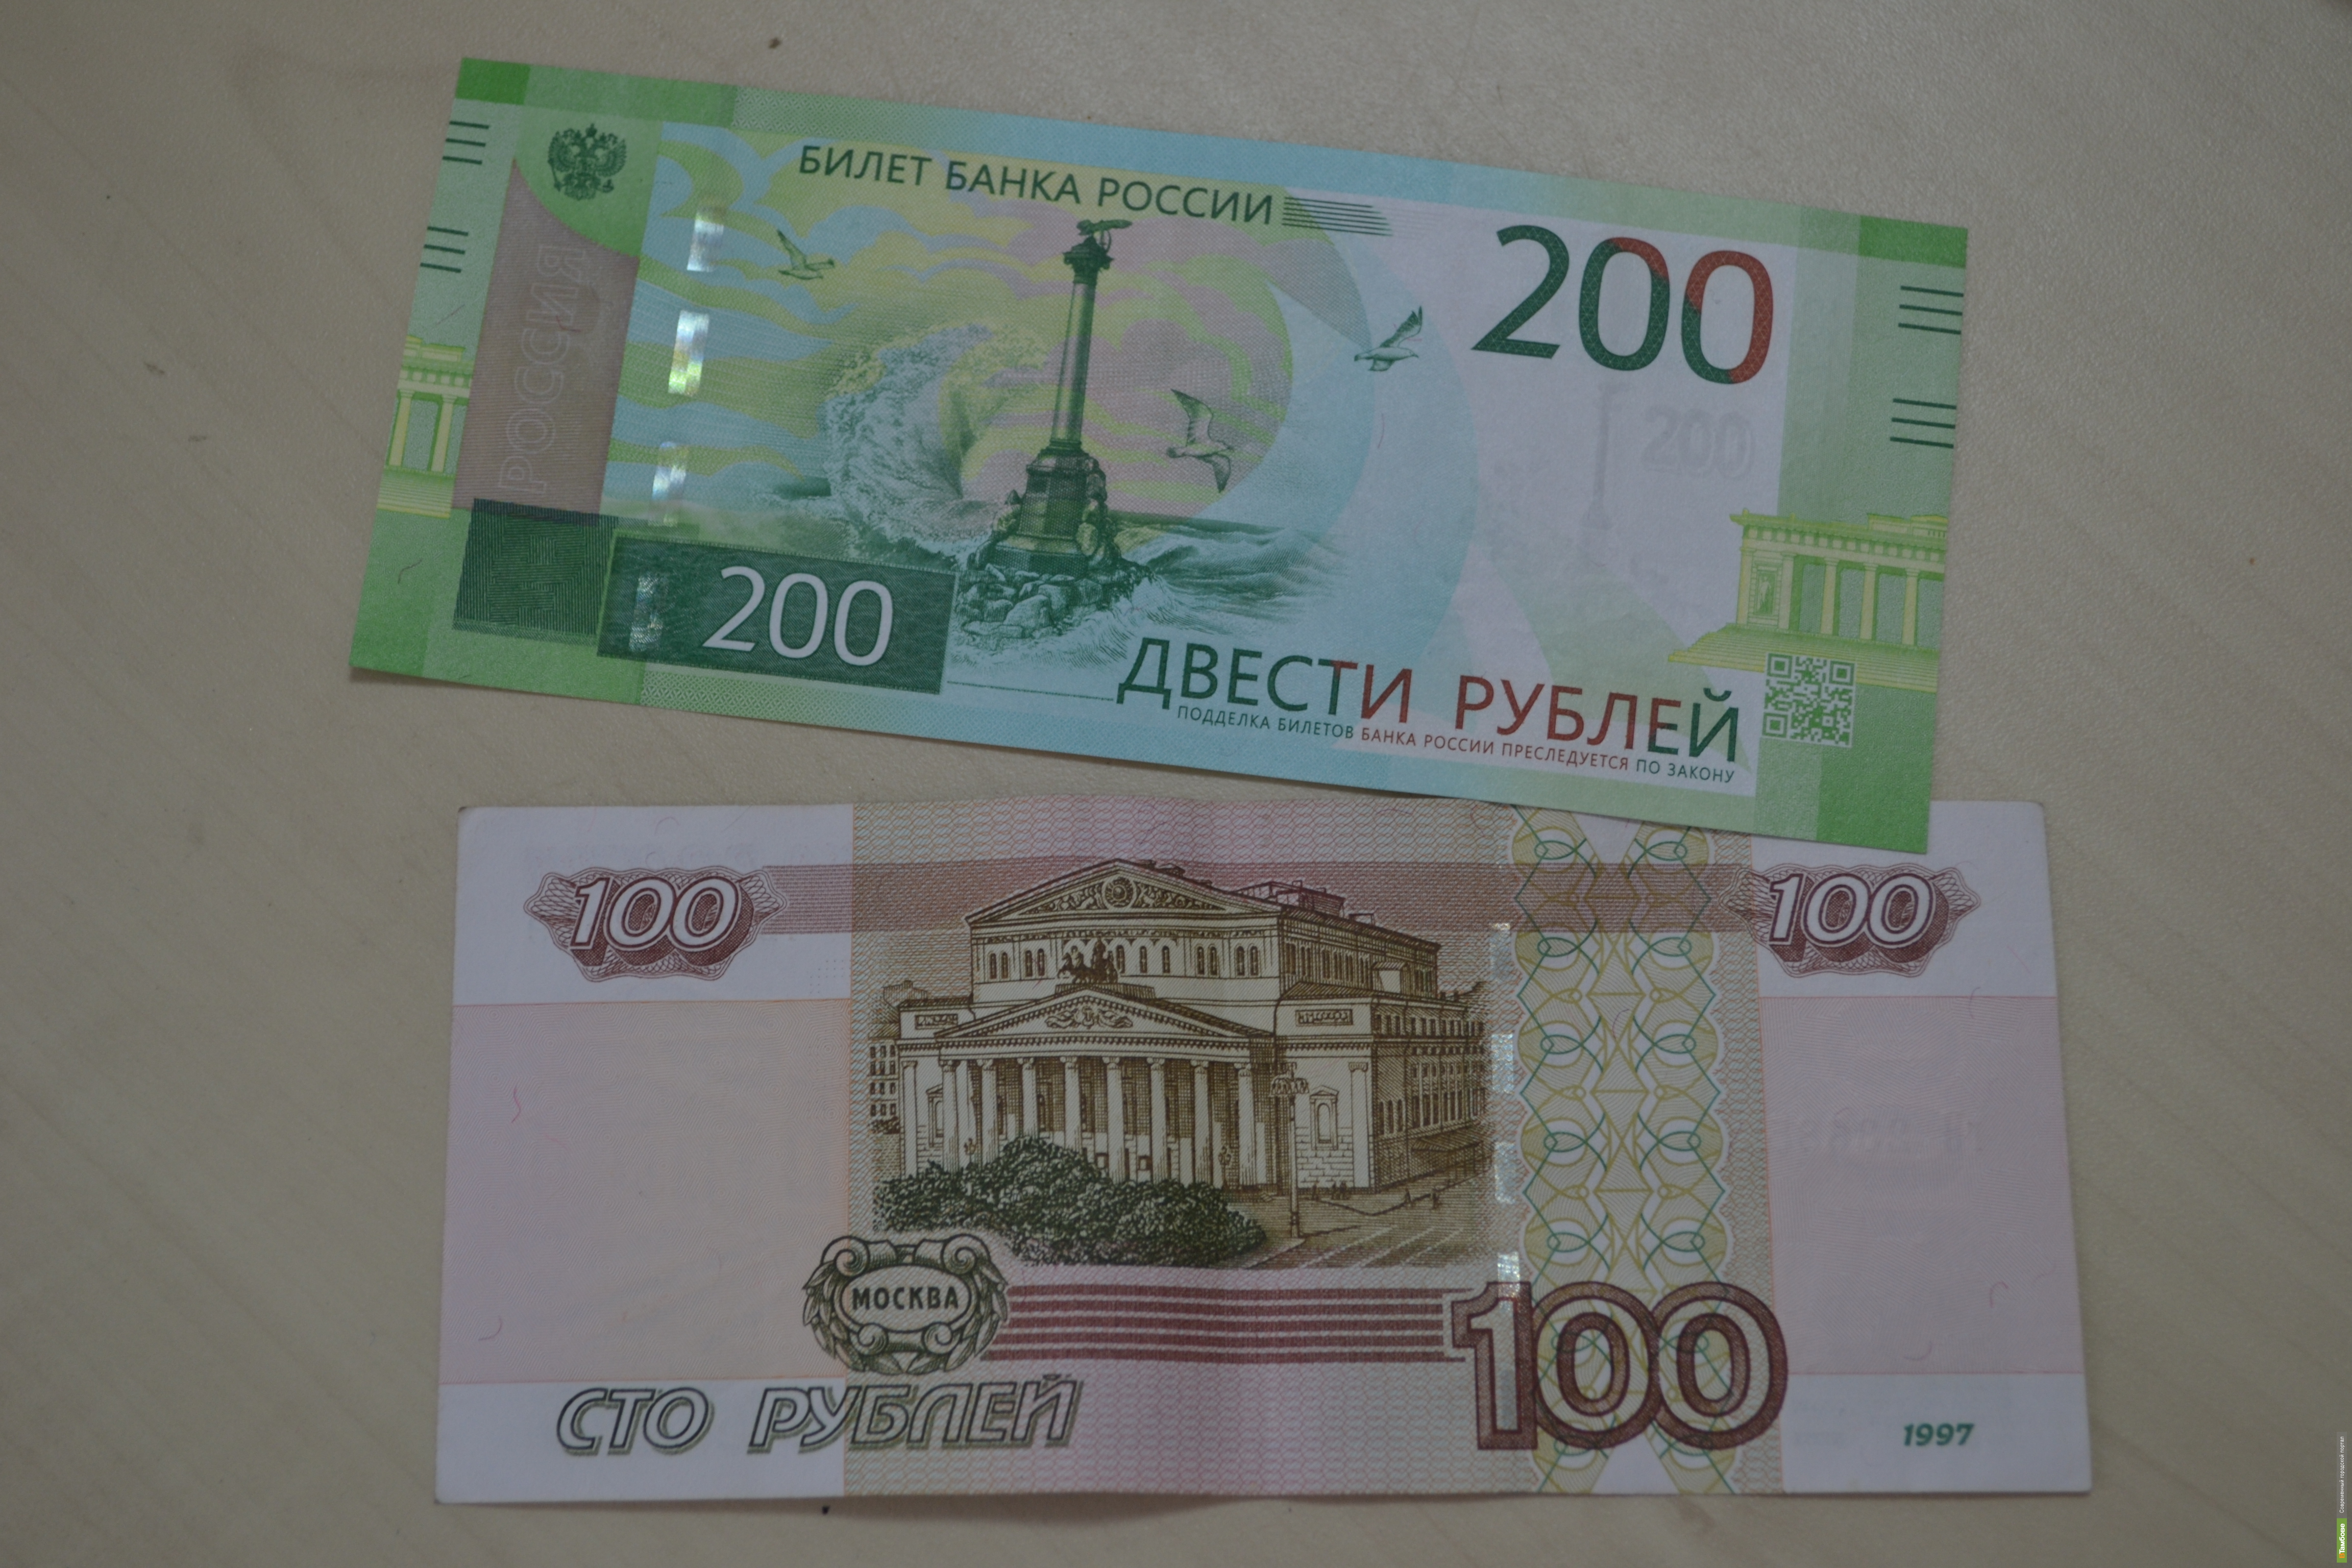 20 от 200 рублей. 200 Рублей. 200 Рублей банкнота. 200 Рублей 1997. Новые купюры.